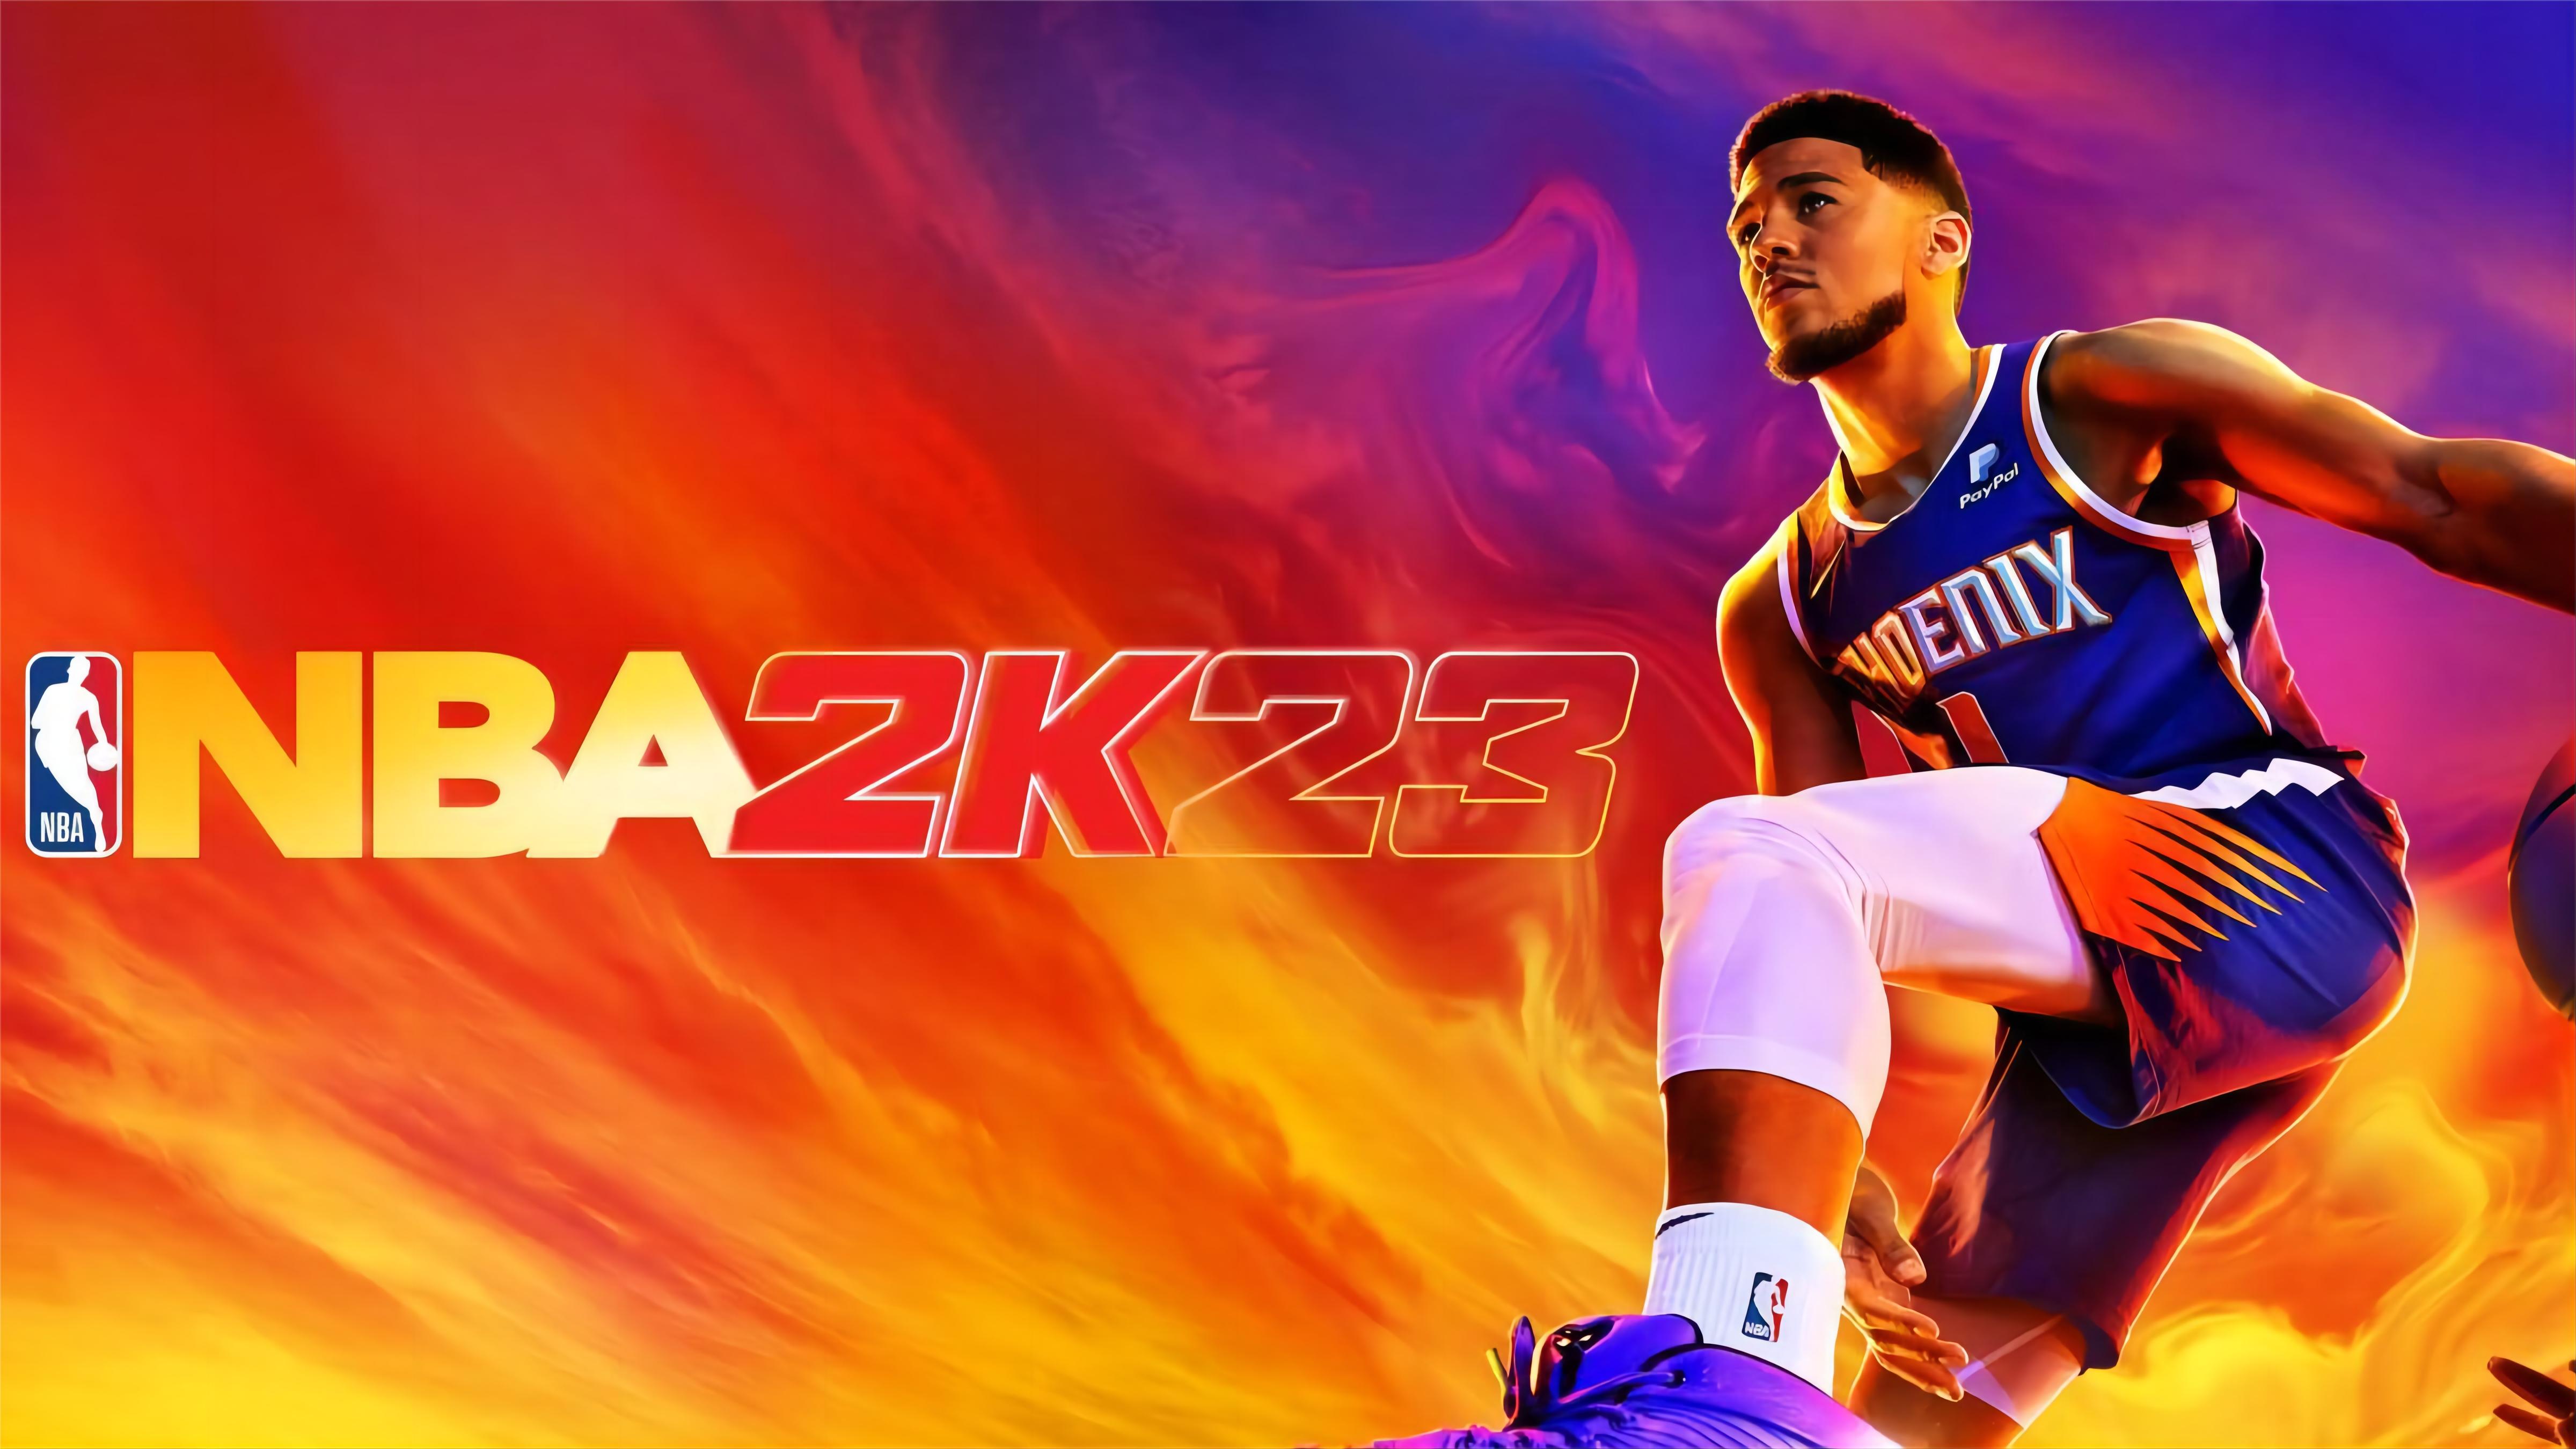 《NBA 2K23》的封面是菲尼克斯太阳的得分后卫德文·布克